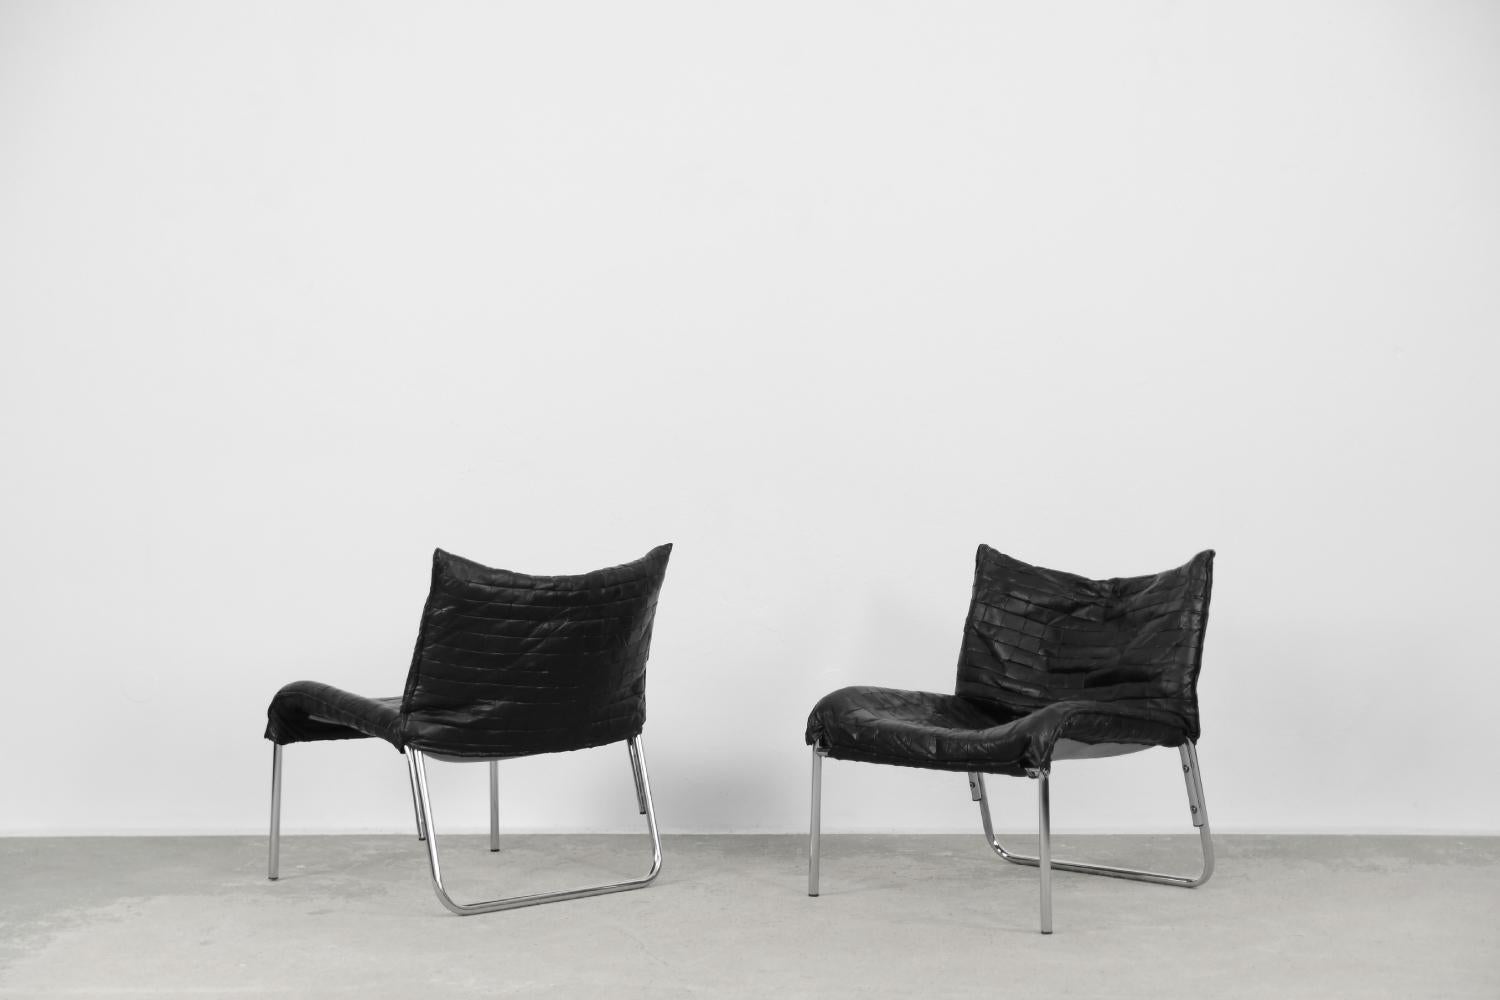 Cet ensemble de fauteuils a été produit au début des années 1980 par la marque suédoise Ikea. Le modèle SET apparaît pour la première fois dans le catalogue en 1979, il était alors exclusivement revêtu de tissu et a été développé dans le